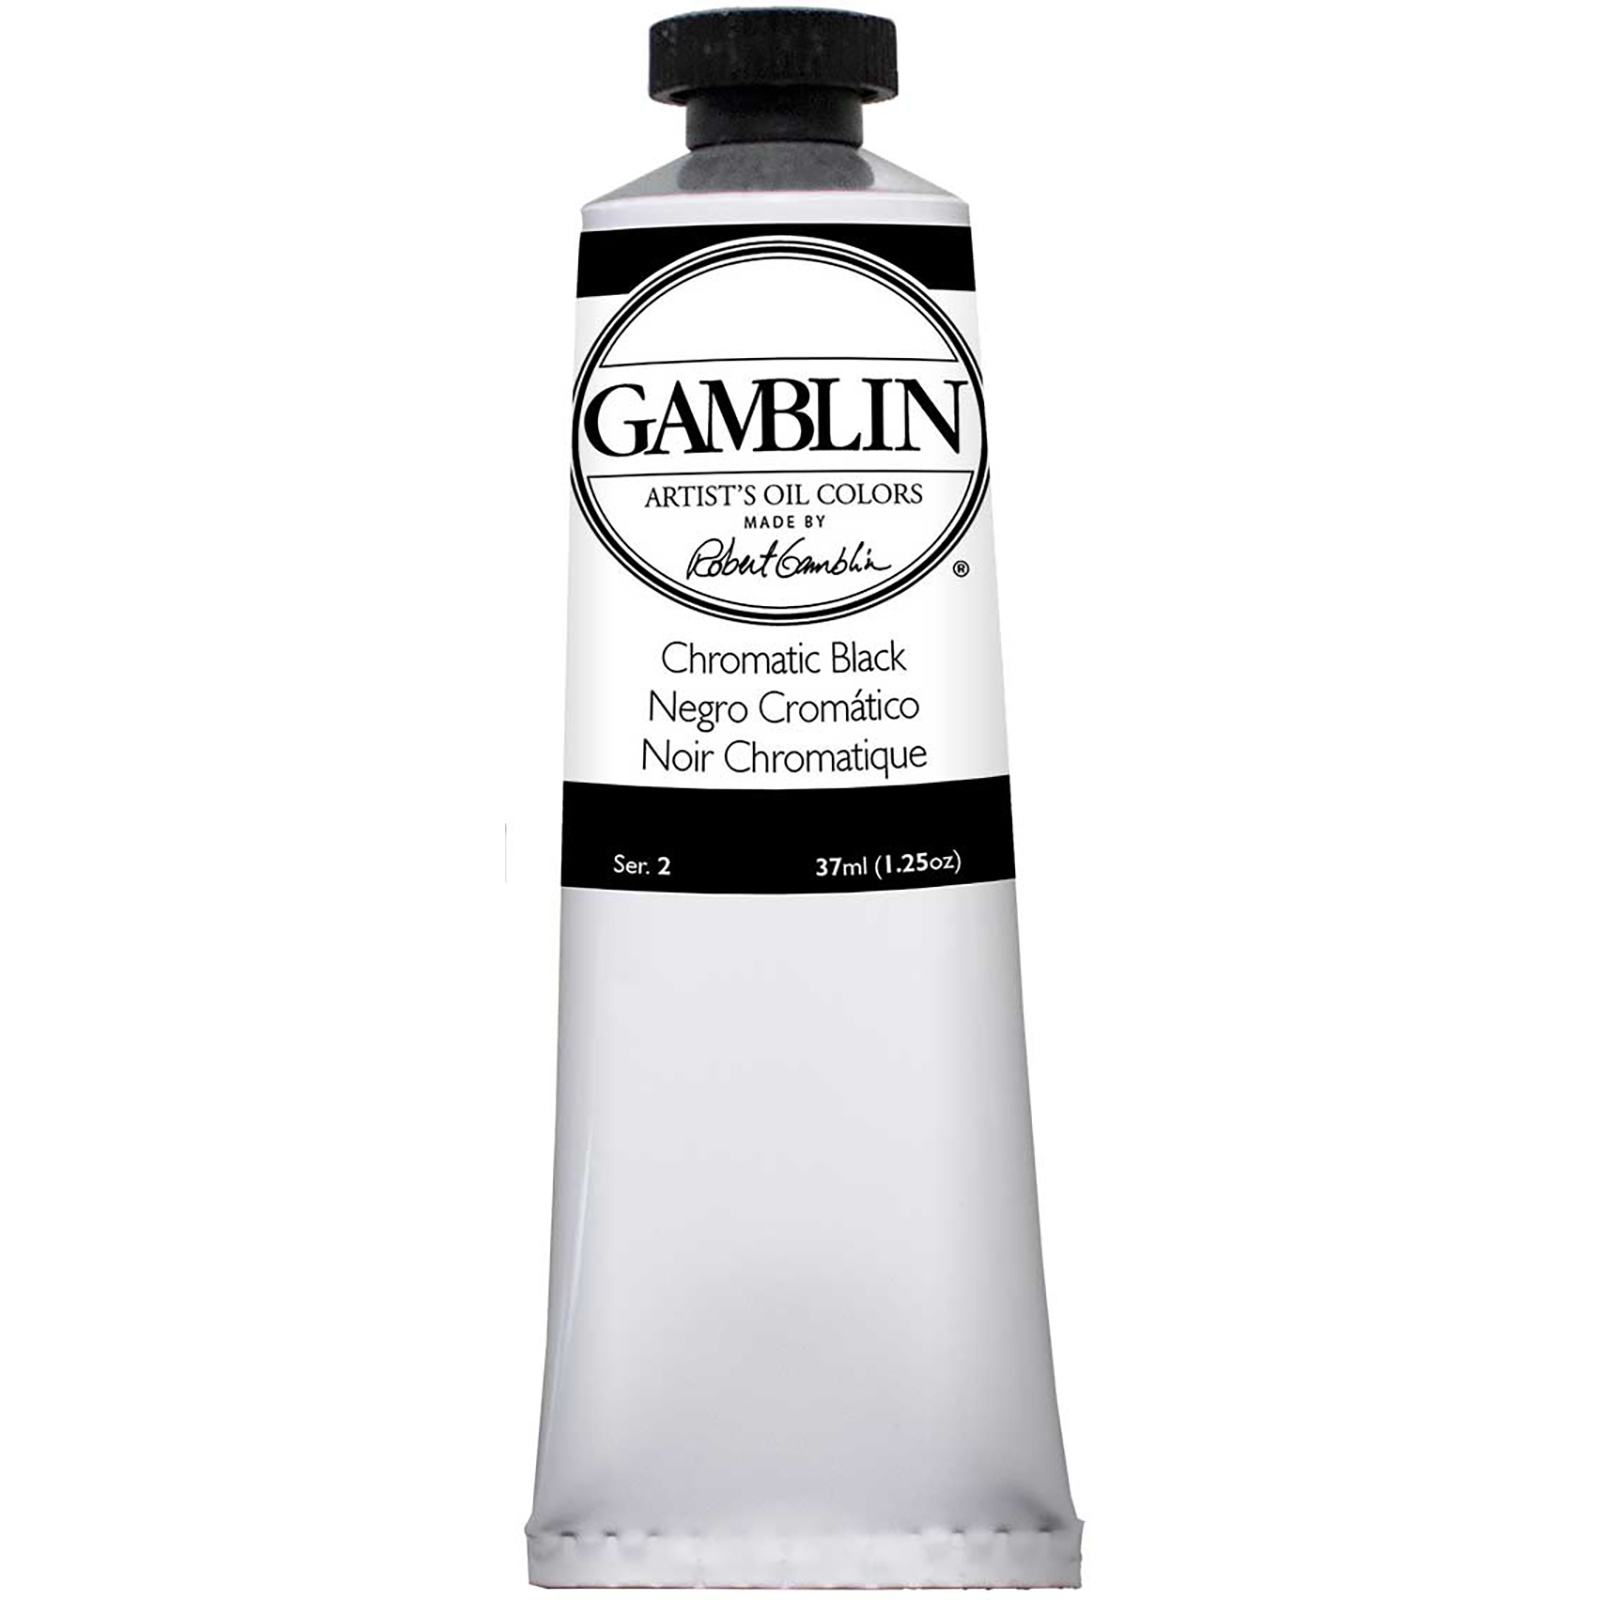 Gamblin Artist Grade Oil Colors, 37ml Studio Tubes, Chromatic Black